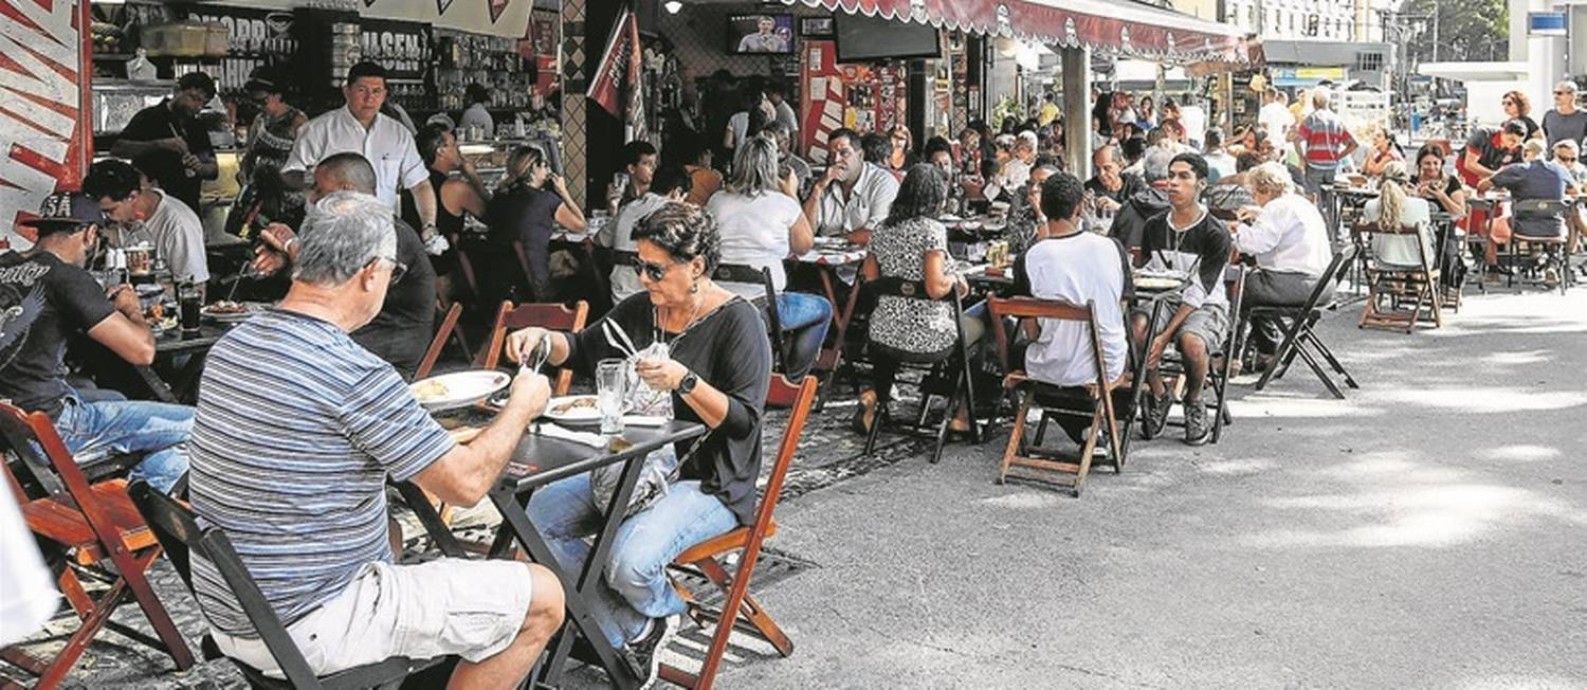 Praça Mauá agora tem restaurantes cheios até no fim de semana - Jornal O  Globo